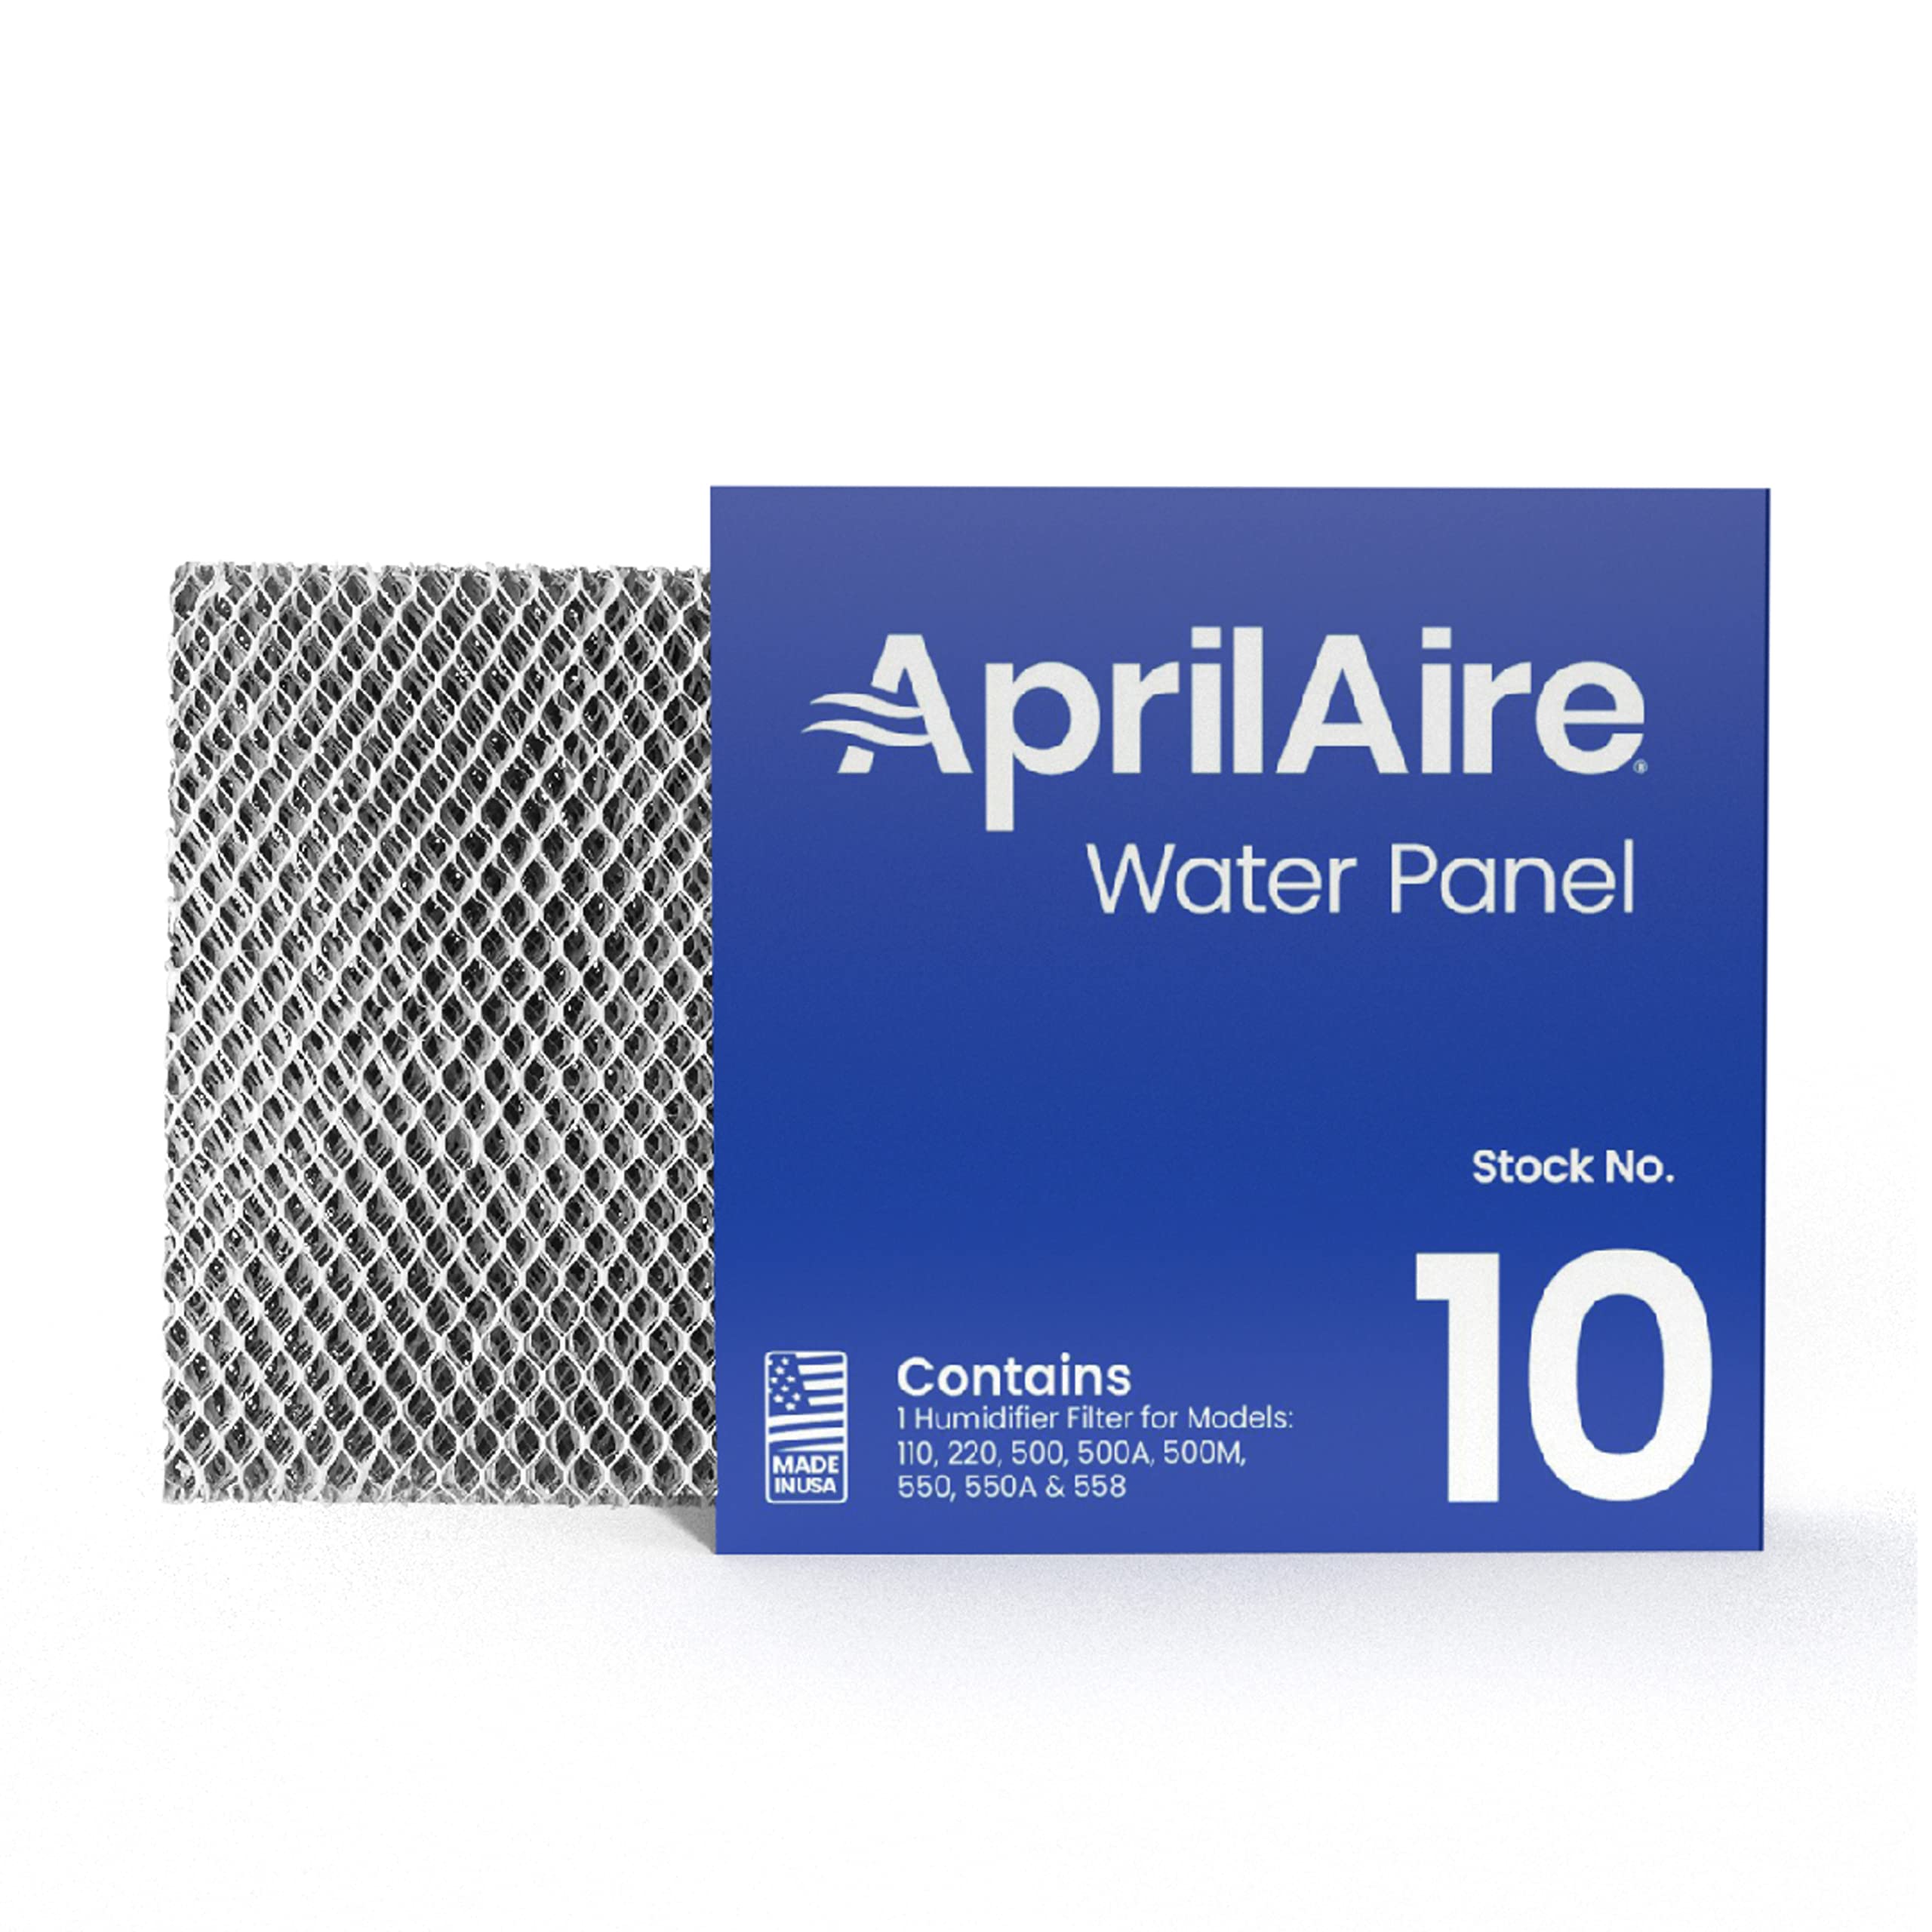 Aprilaire - 10 A1 10 交換用水パネル、家全体の加湿器モデル 110、220、500、500A、500M、550、558 用